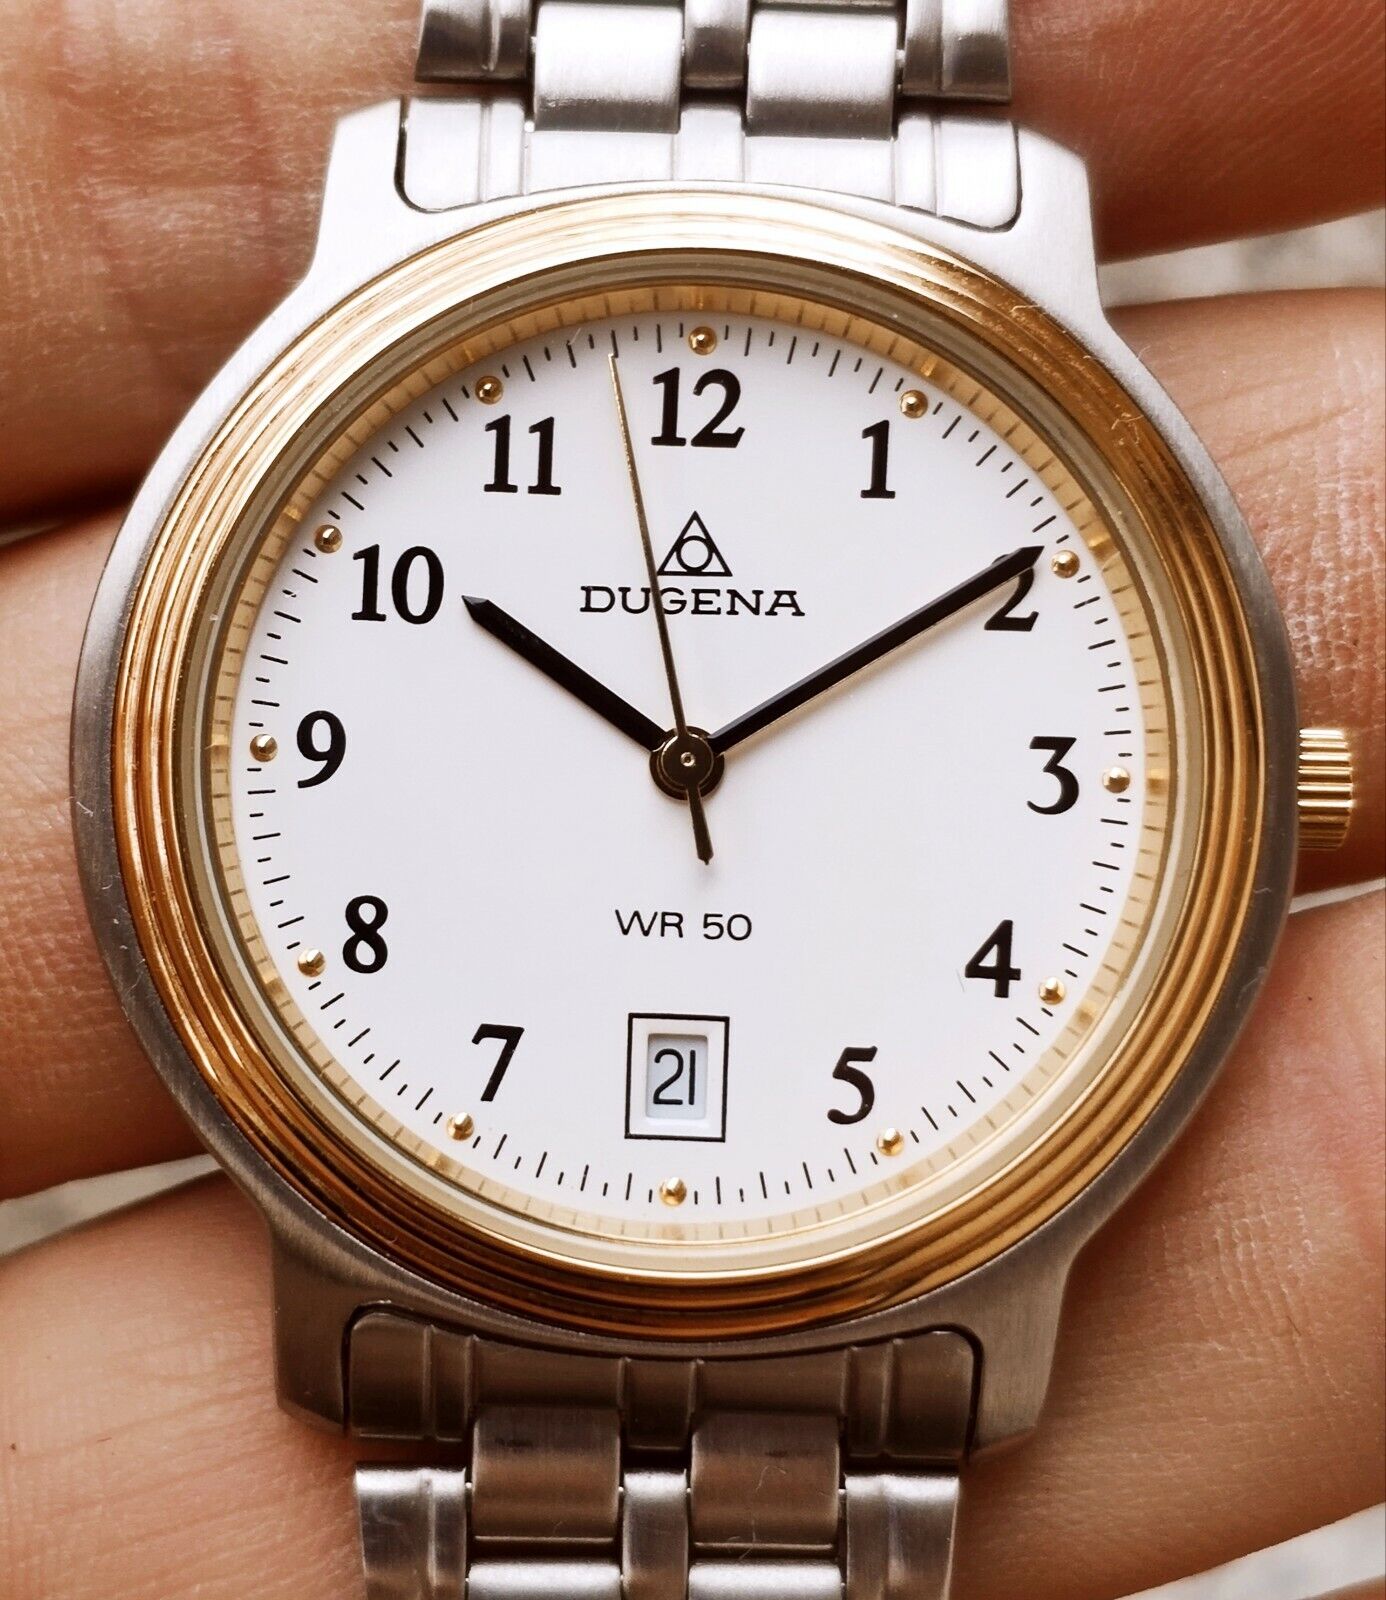 Vintage german men's Dugena quartz watch | eBay